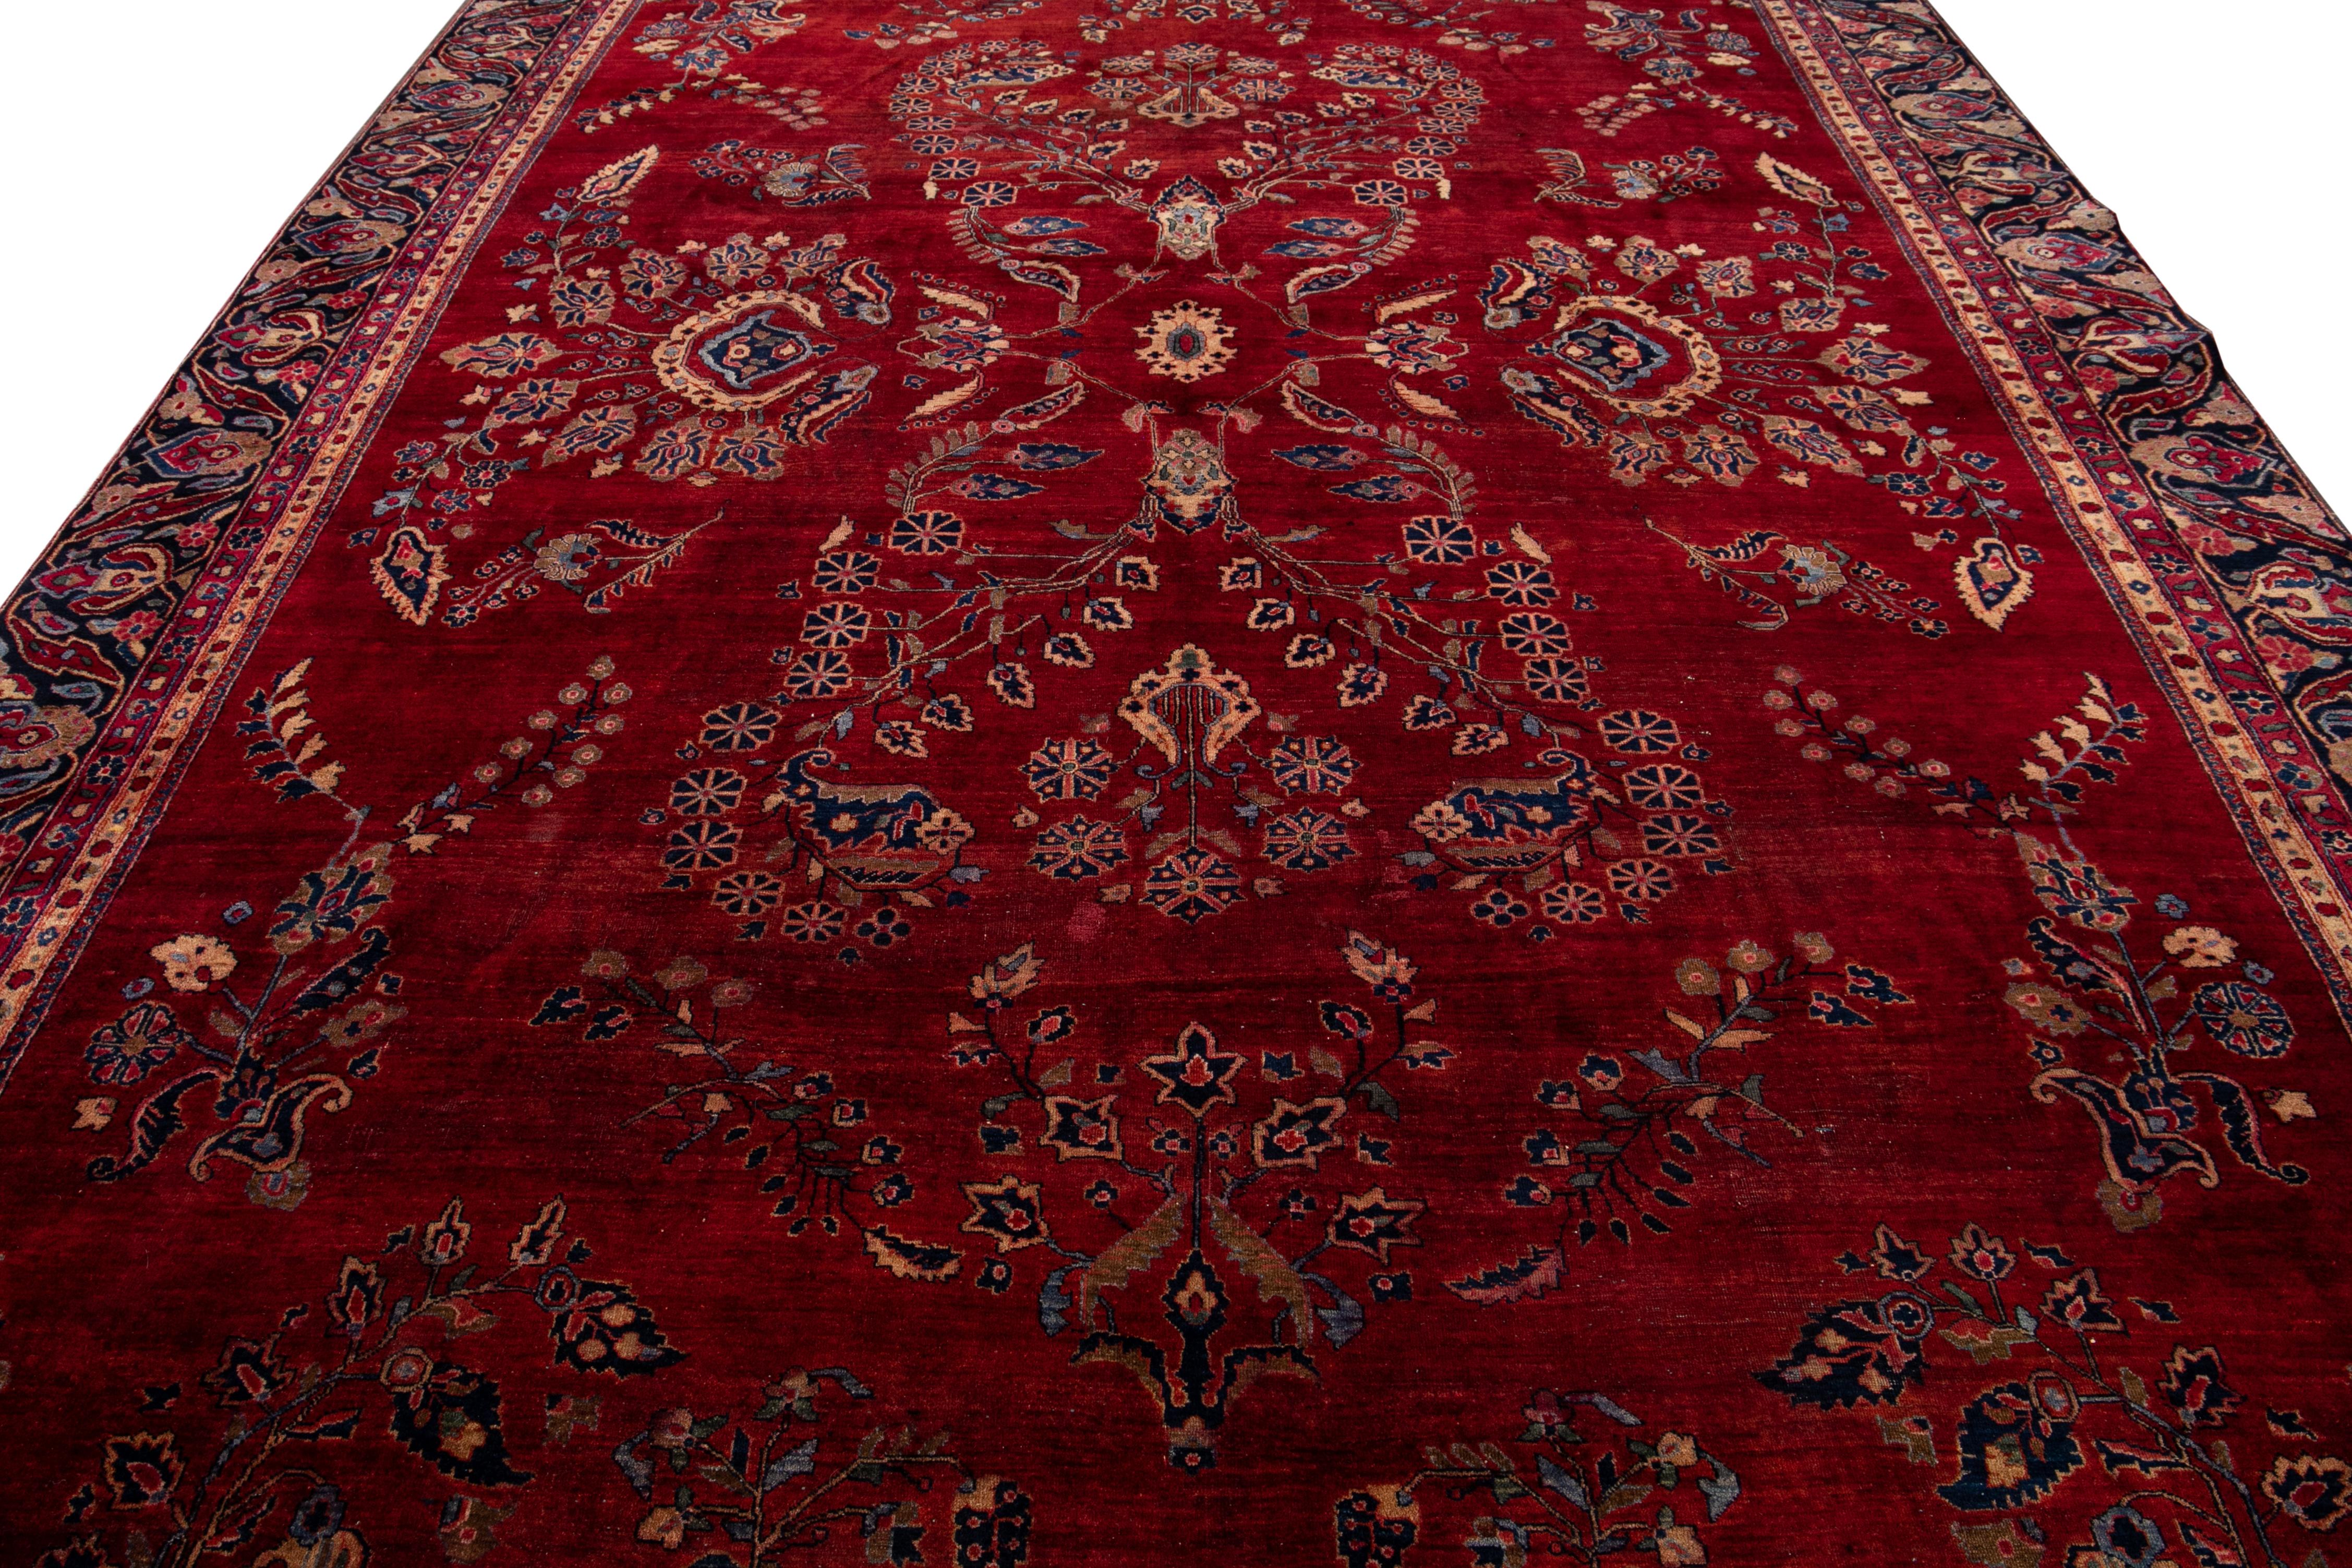 Dieser opulente antike Teppich aus dem persischen Sarouk ist von Hand gefertigt und besteht aus Wolle. Es zeigt ein rotes Feld, das von einem filigranen blauen Rahmen umrahmt wird, der mit bunten Details angereichert ist, die in einem atemberaubend